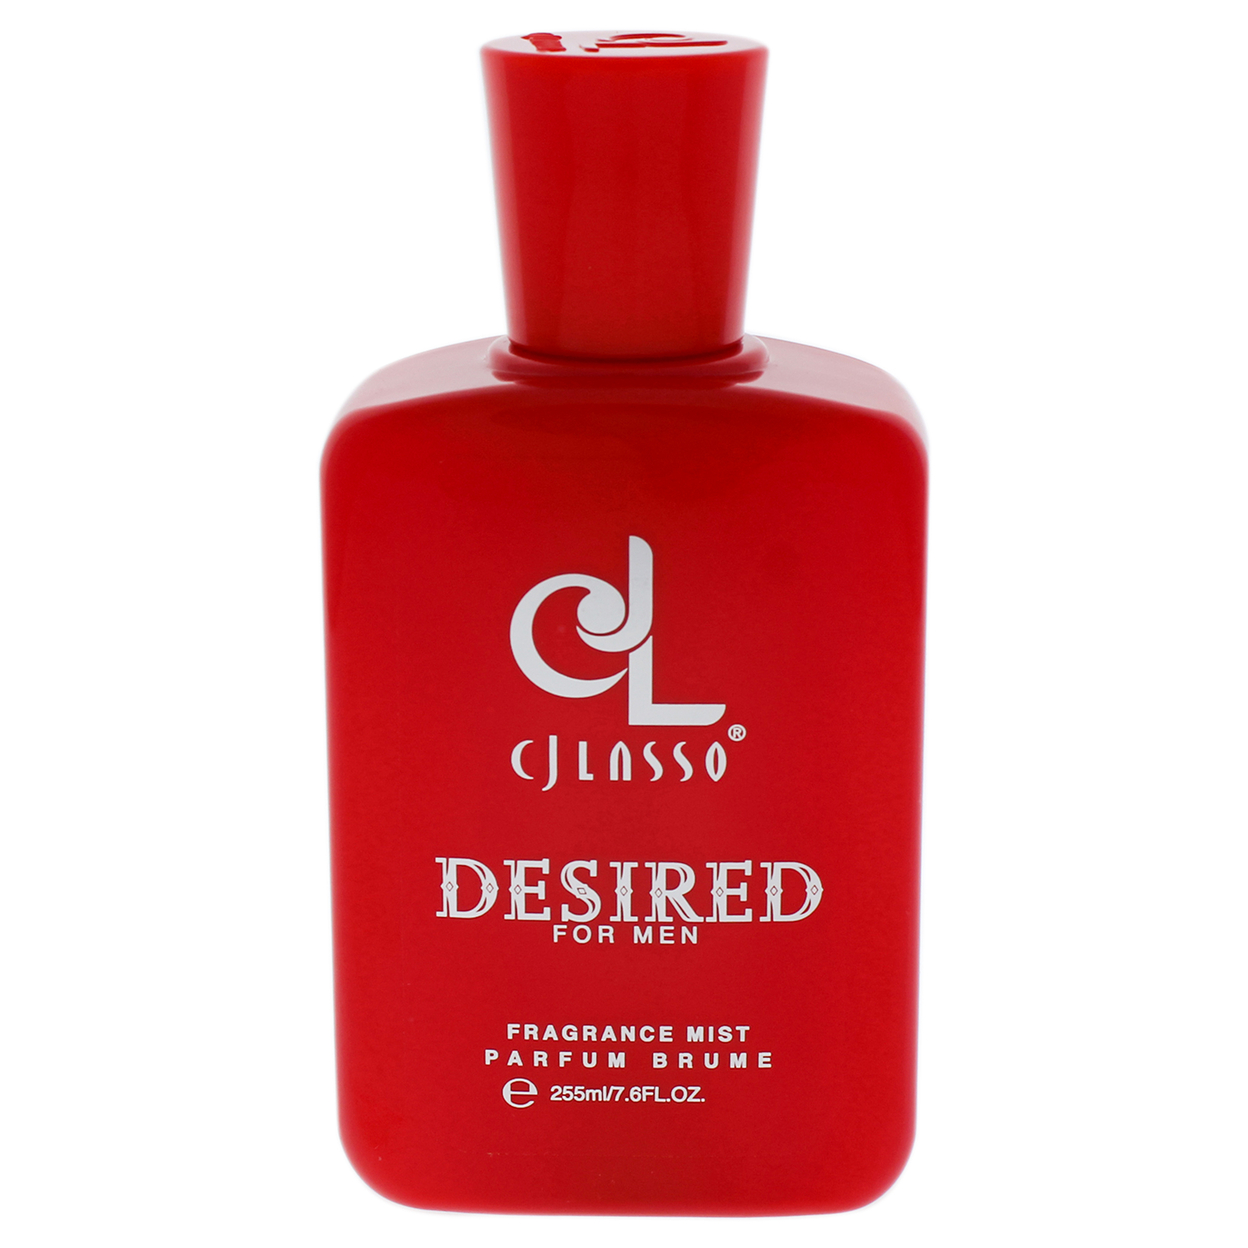 CJ Lasso Desired Fragrance Mist 7.6 Oz